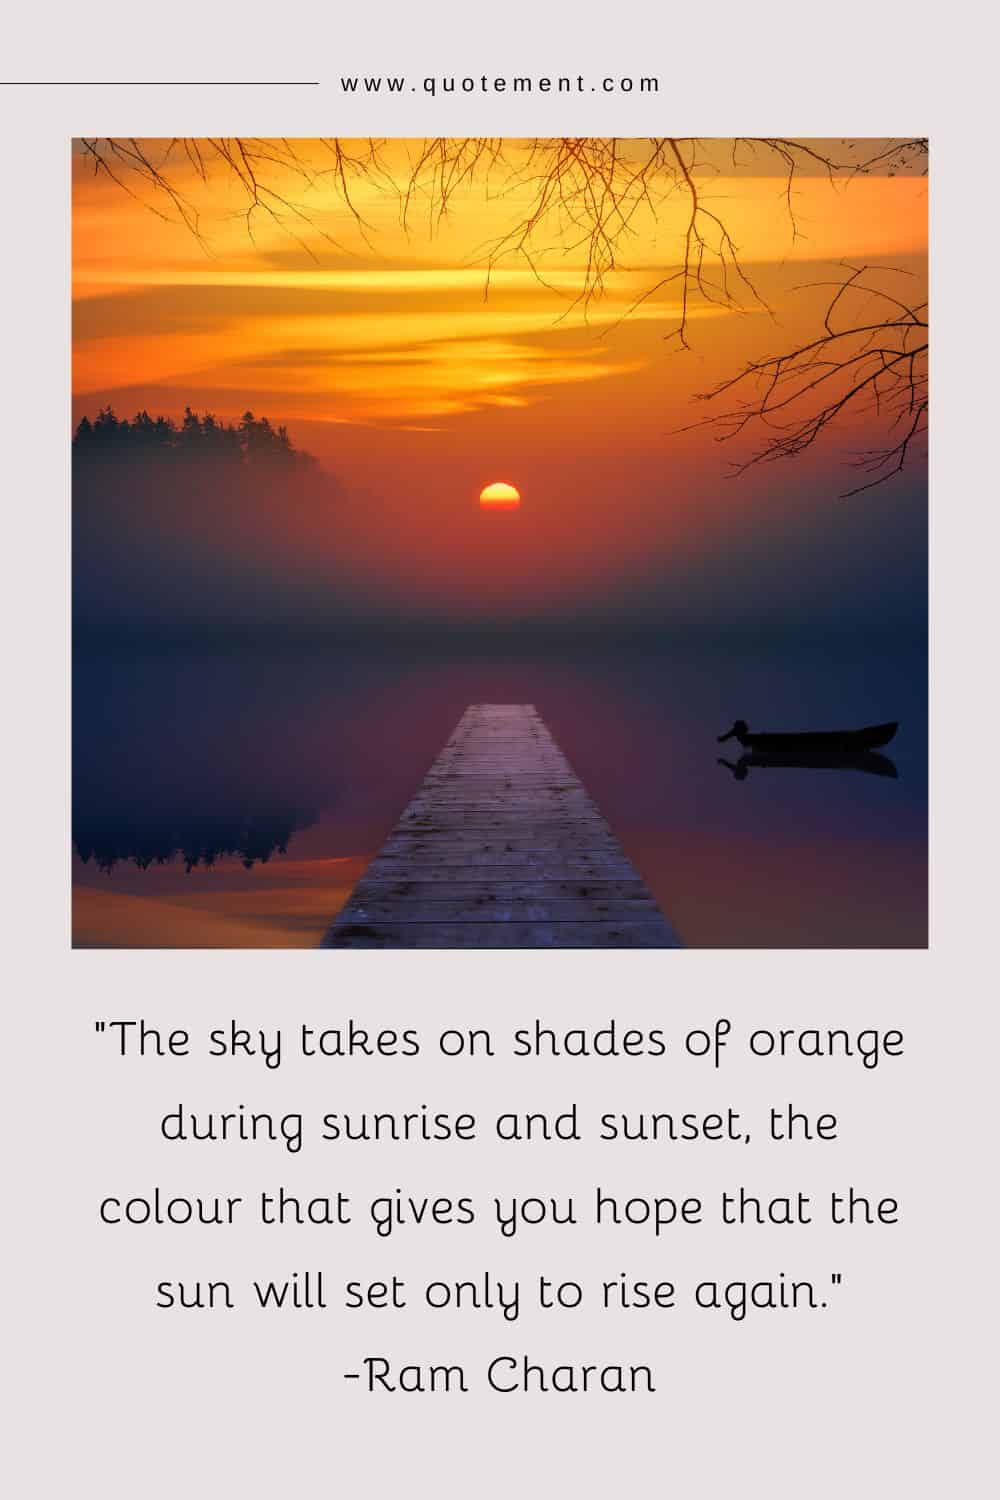 El cielo adquiere tonos anaranjados al amanecer y al atardecer, el color que da esperanzas de que el sol se ponga para volver a salir.